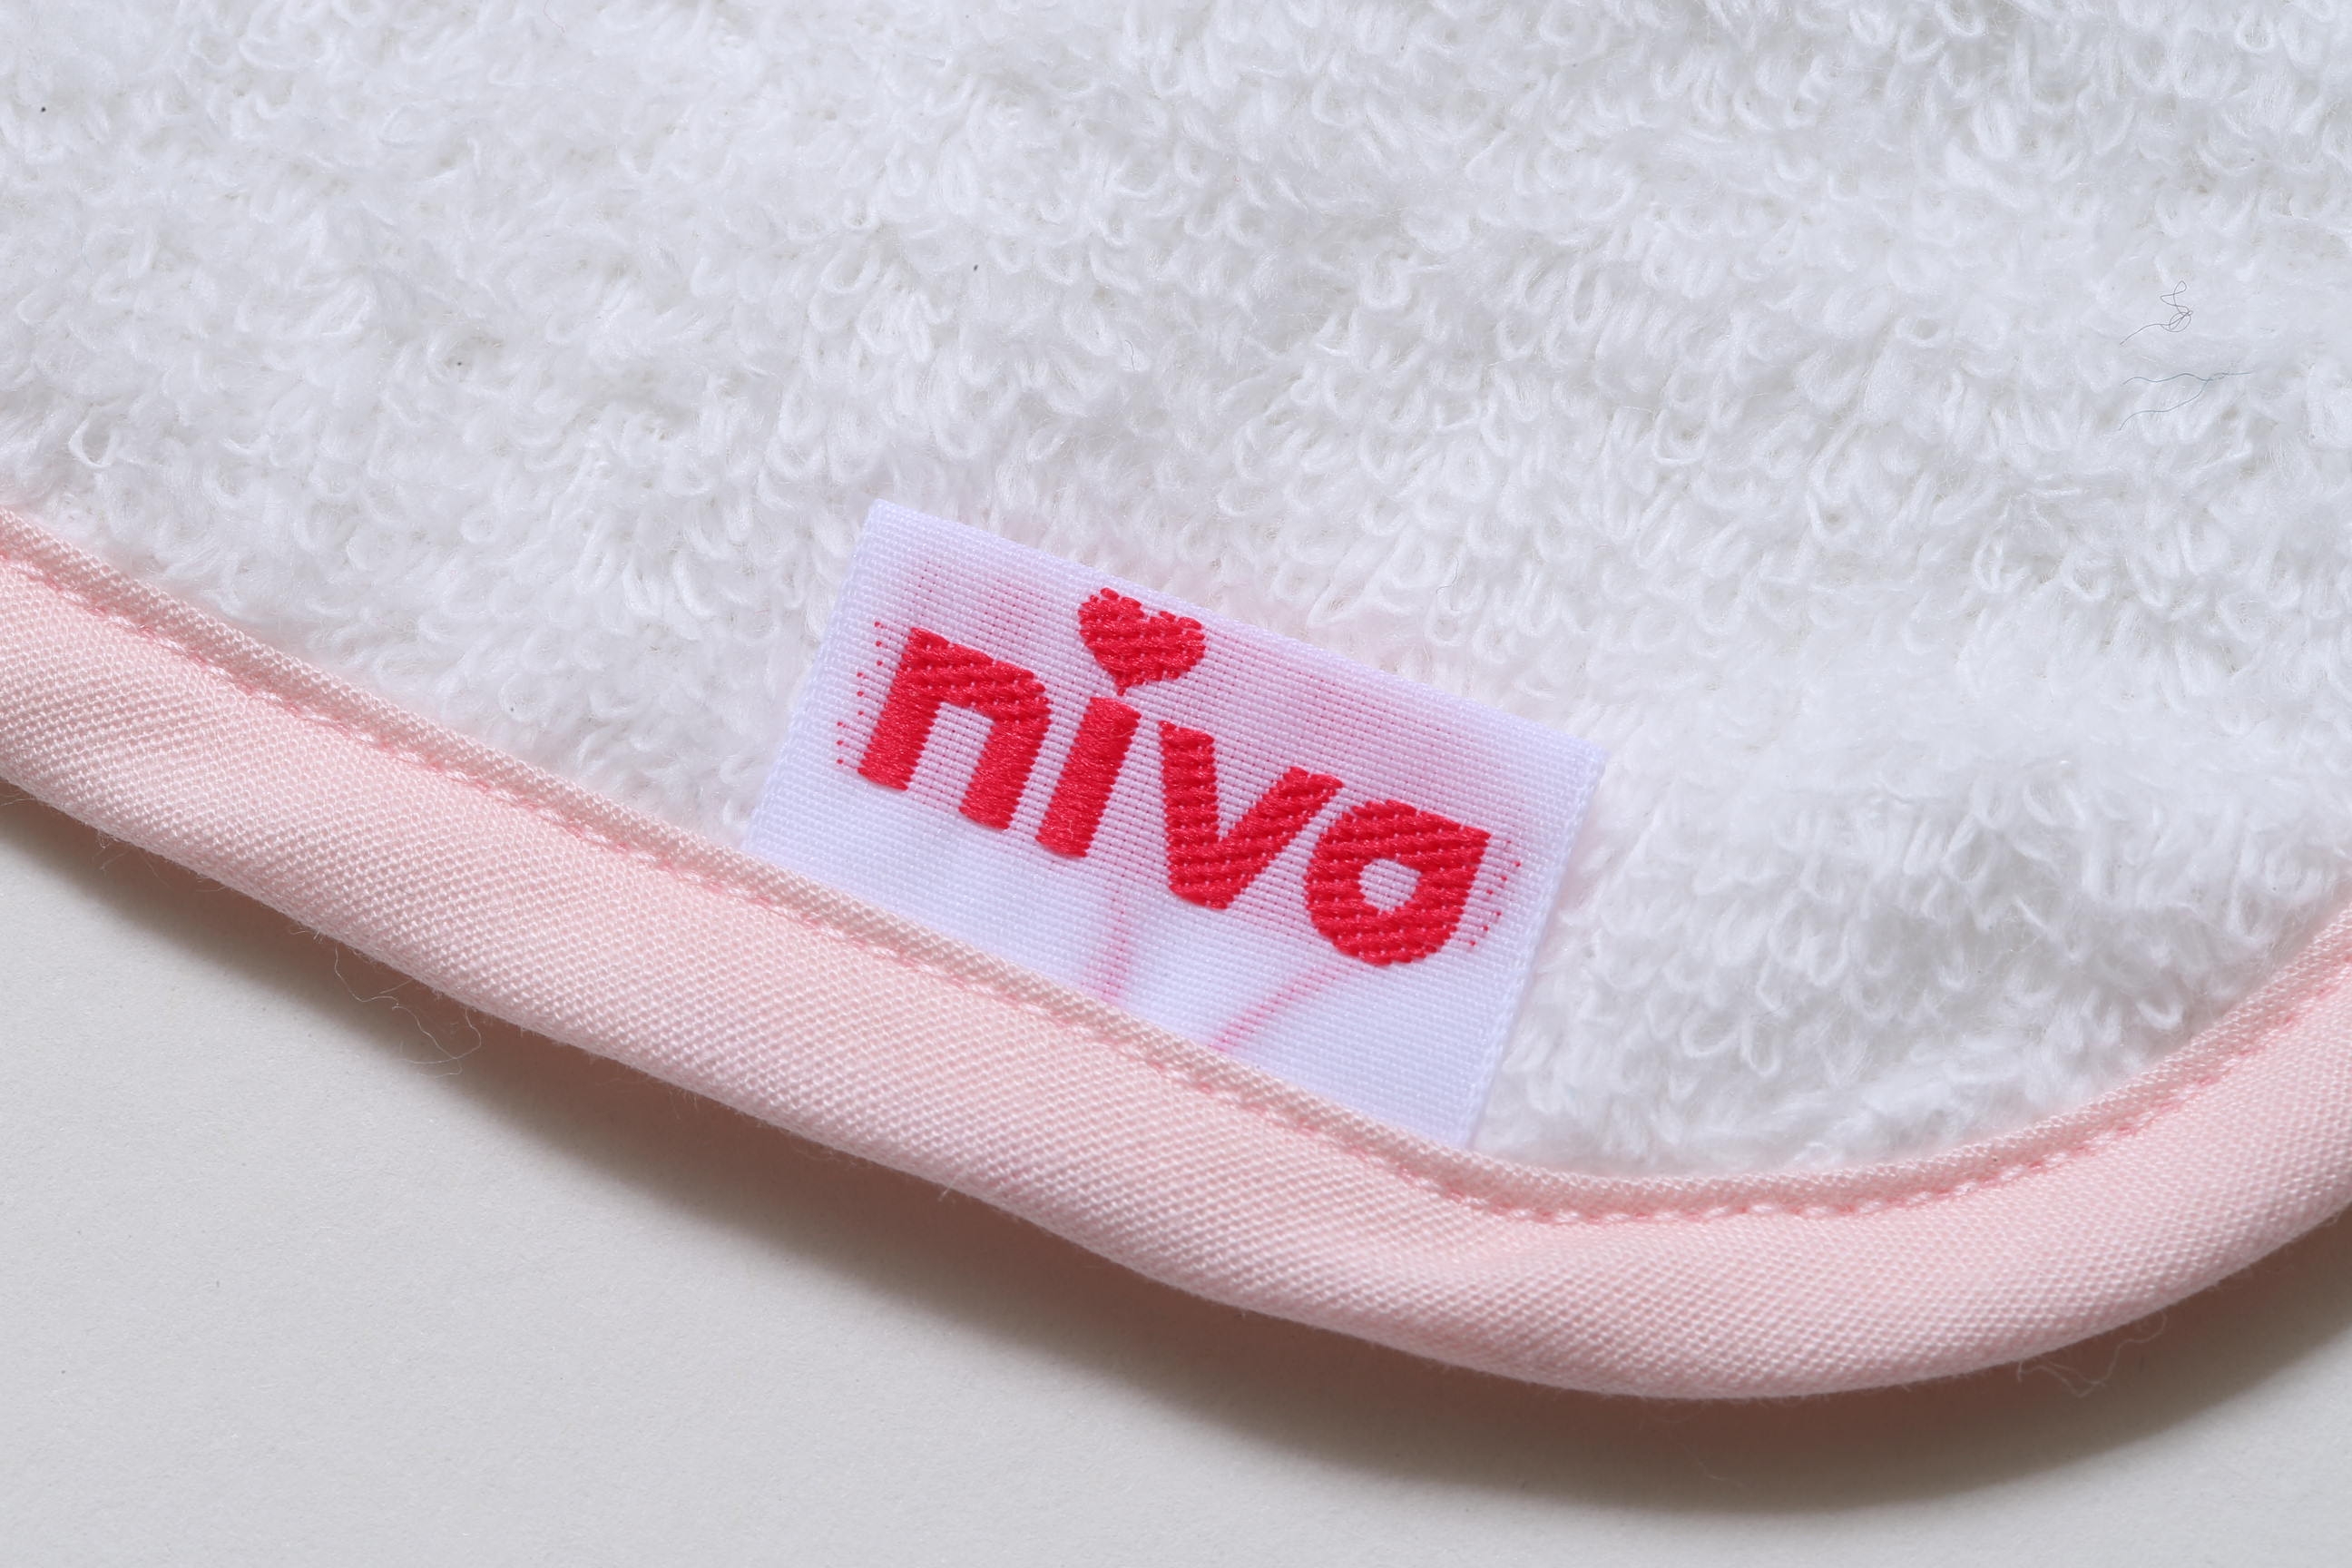 niva/usagi towel set